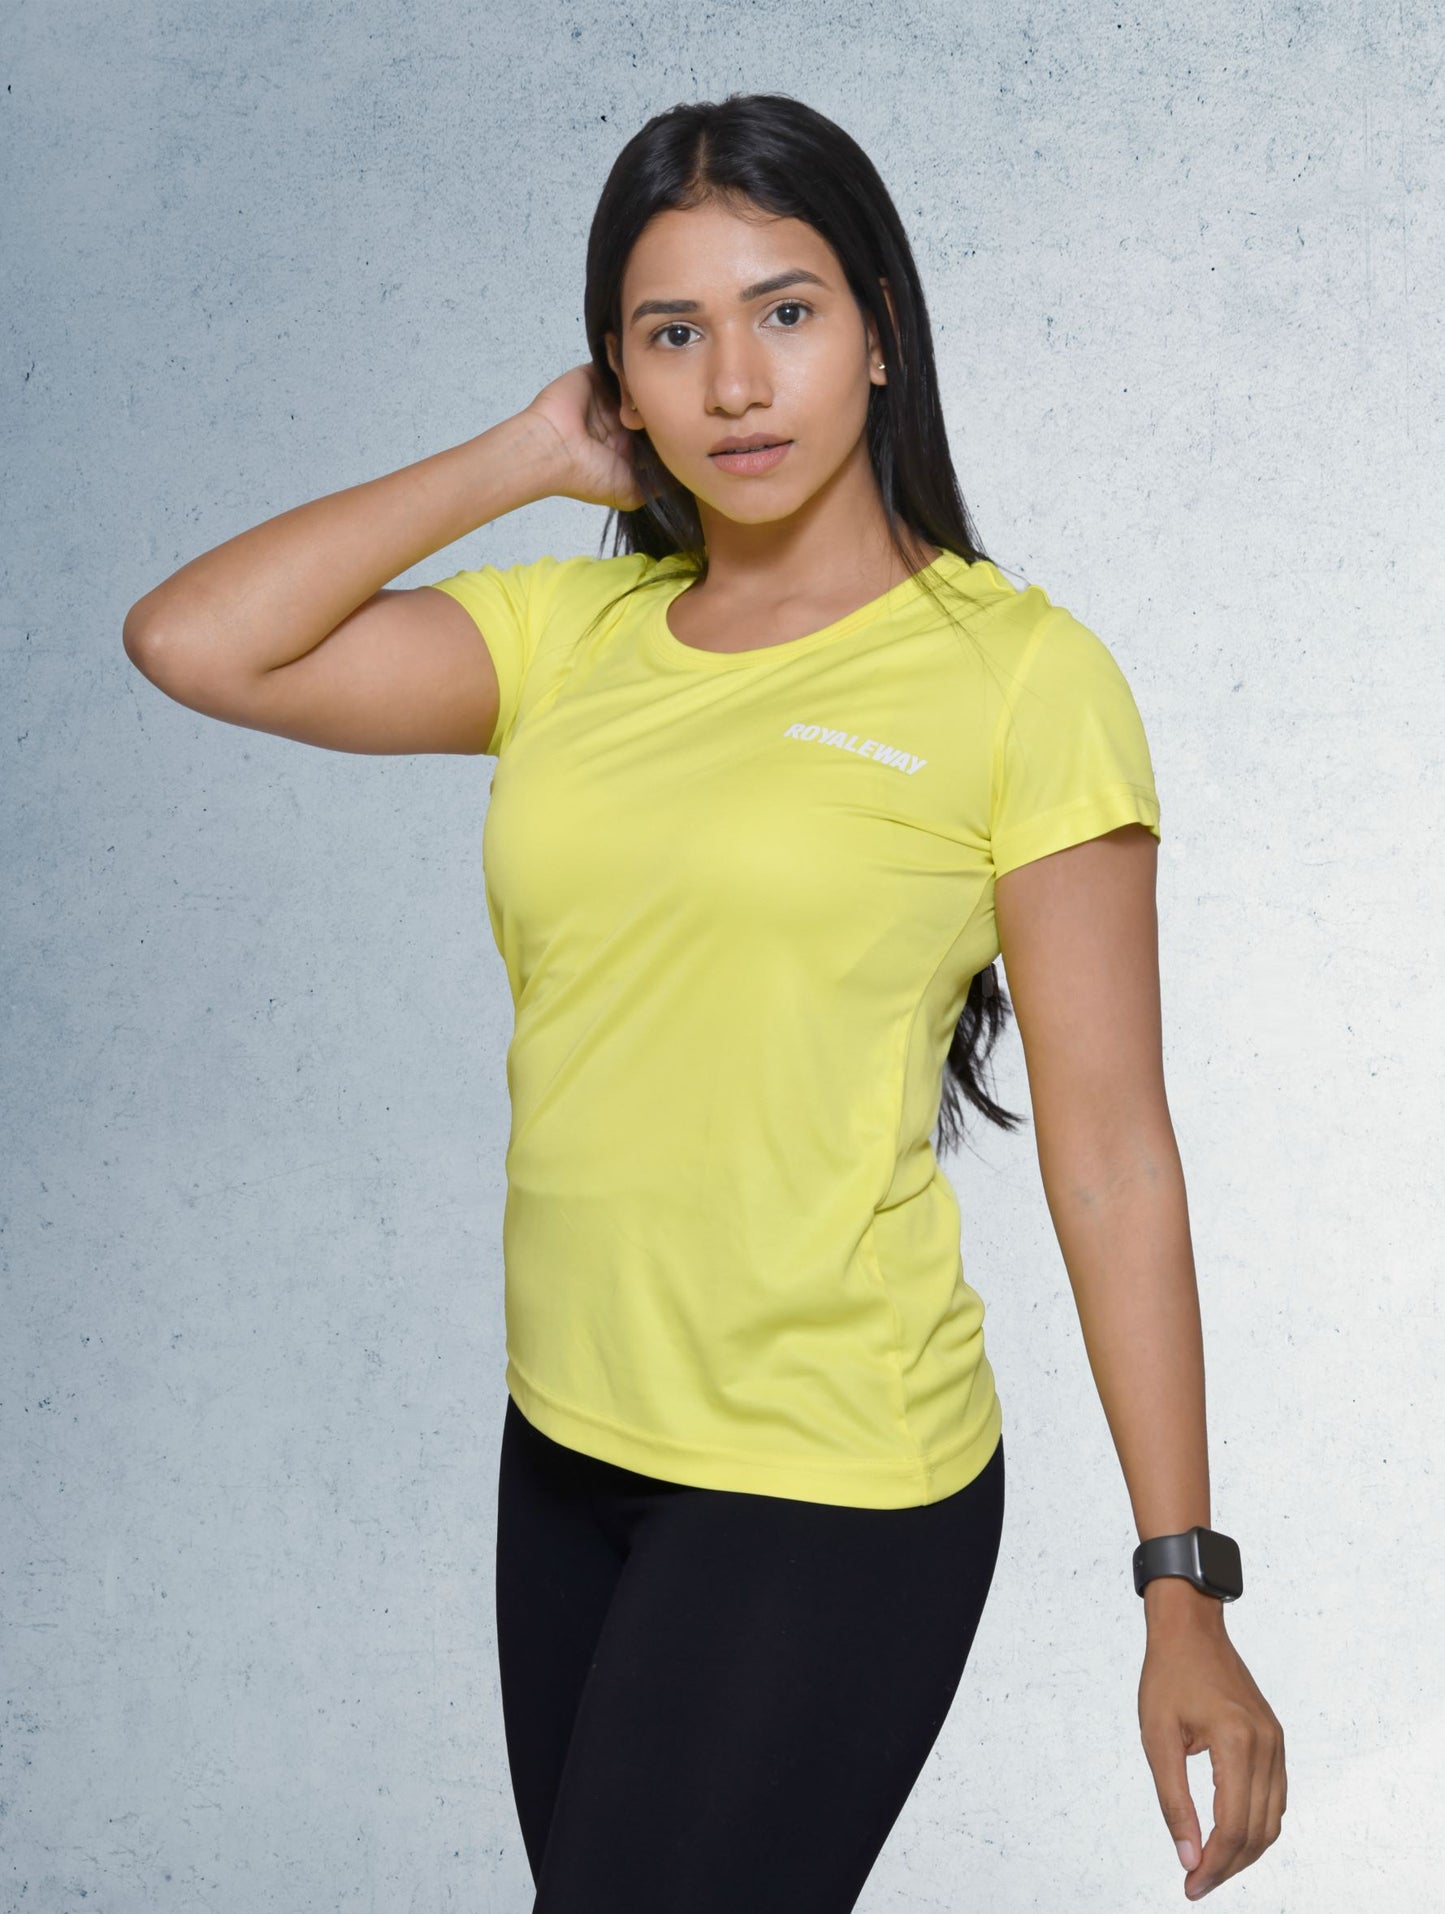 DriSOFT T Shirt Top Lemon Yellow  Women RWW2016